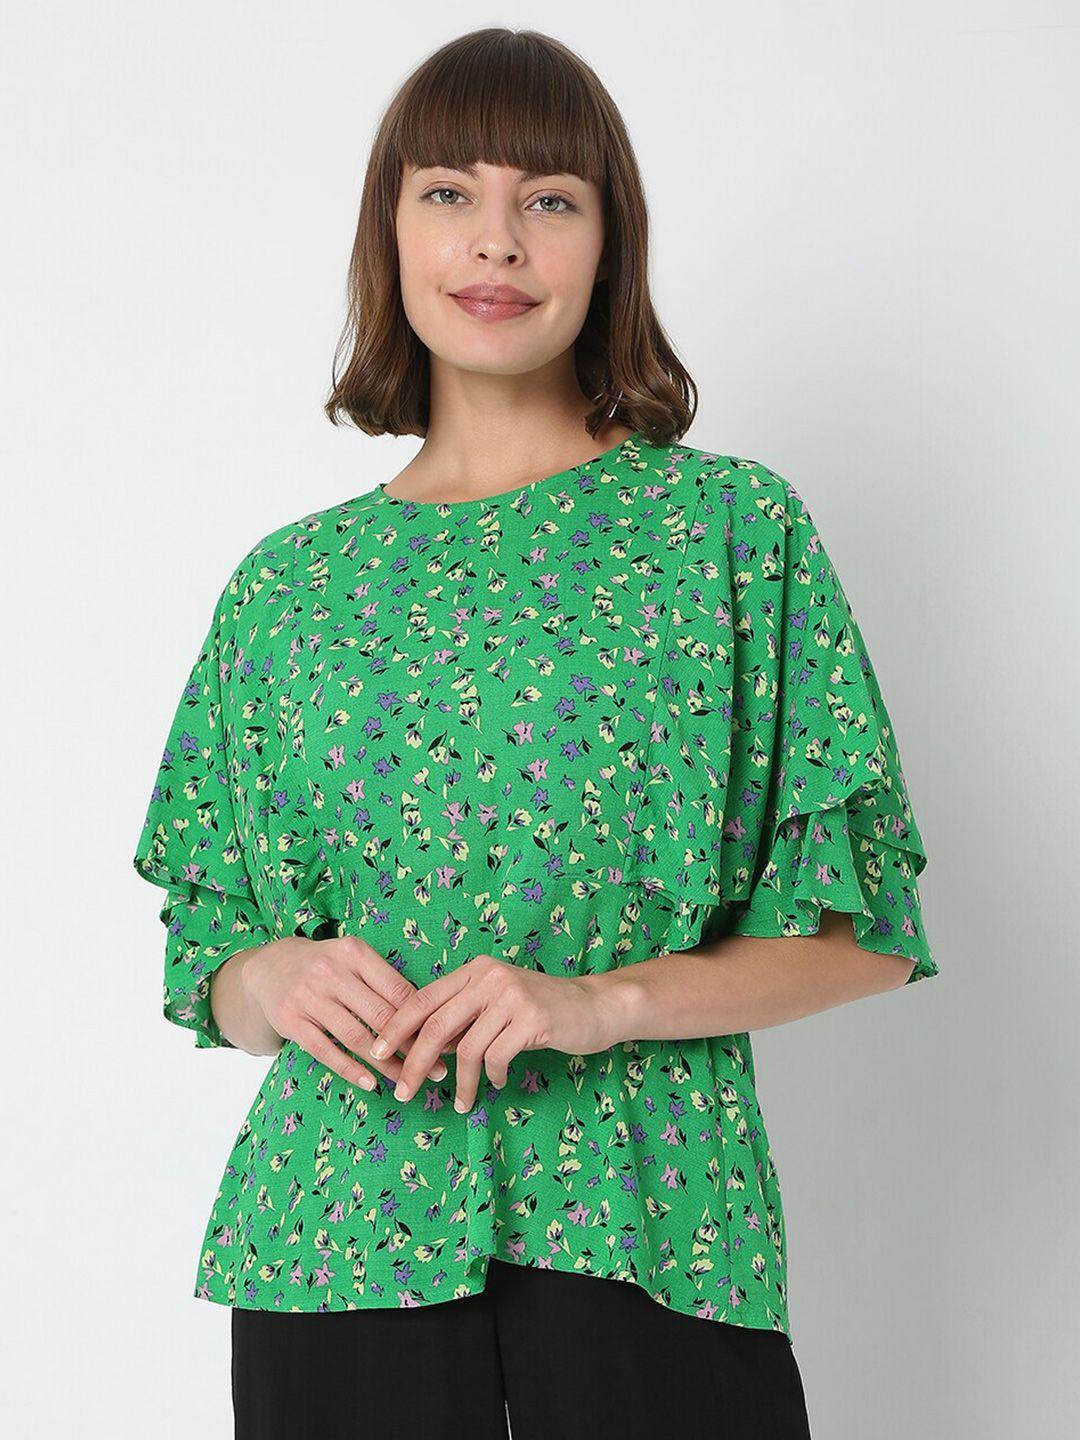 vero moda green floral printed top